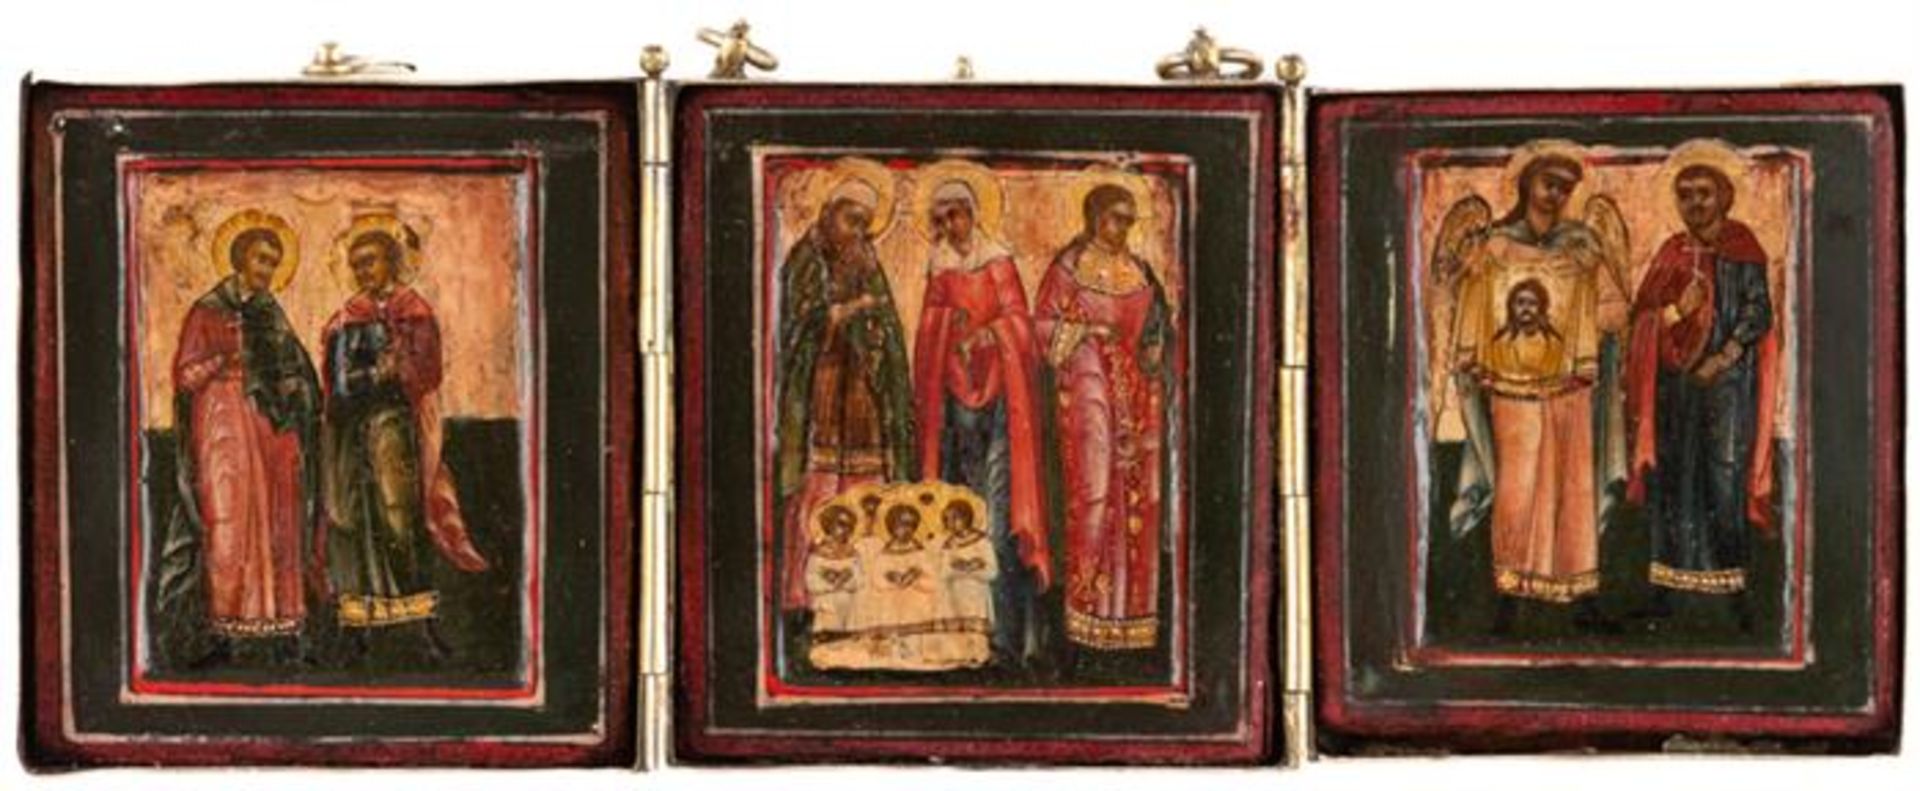 HEILIGE, russisches Triptychon, 19./20. Jh.